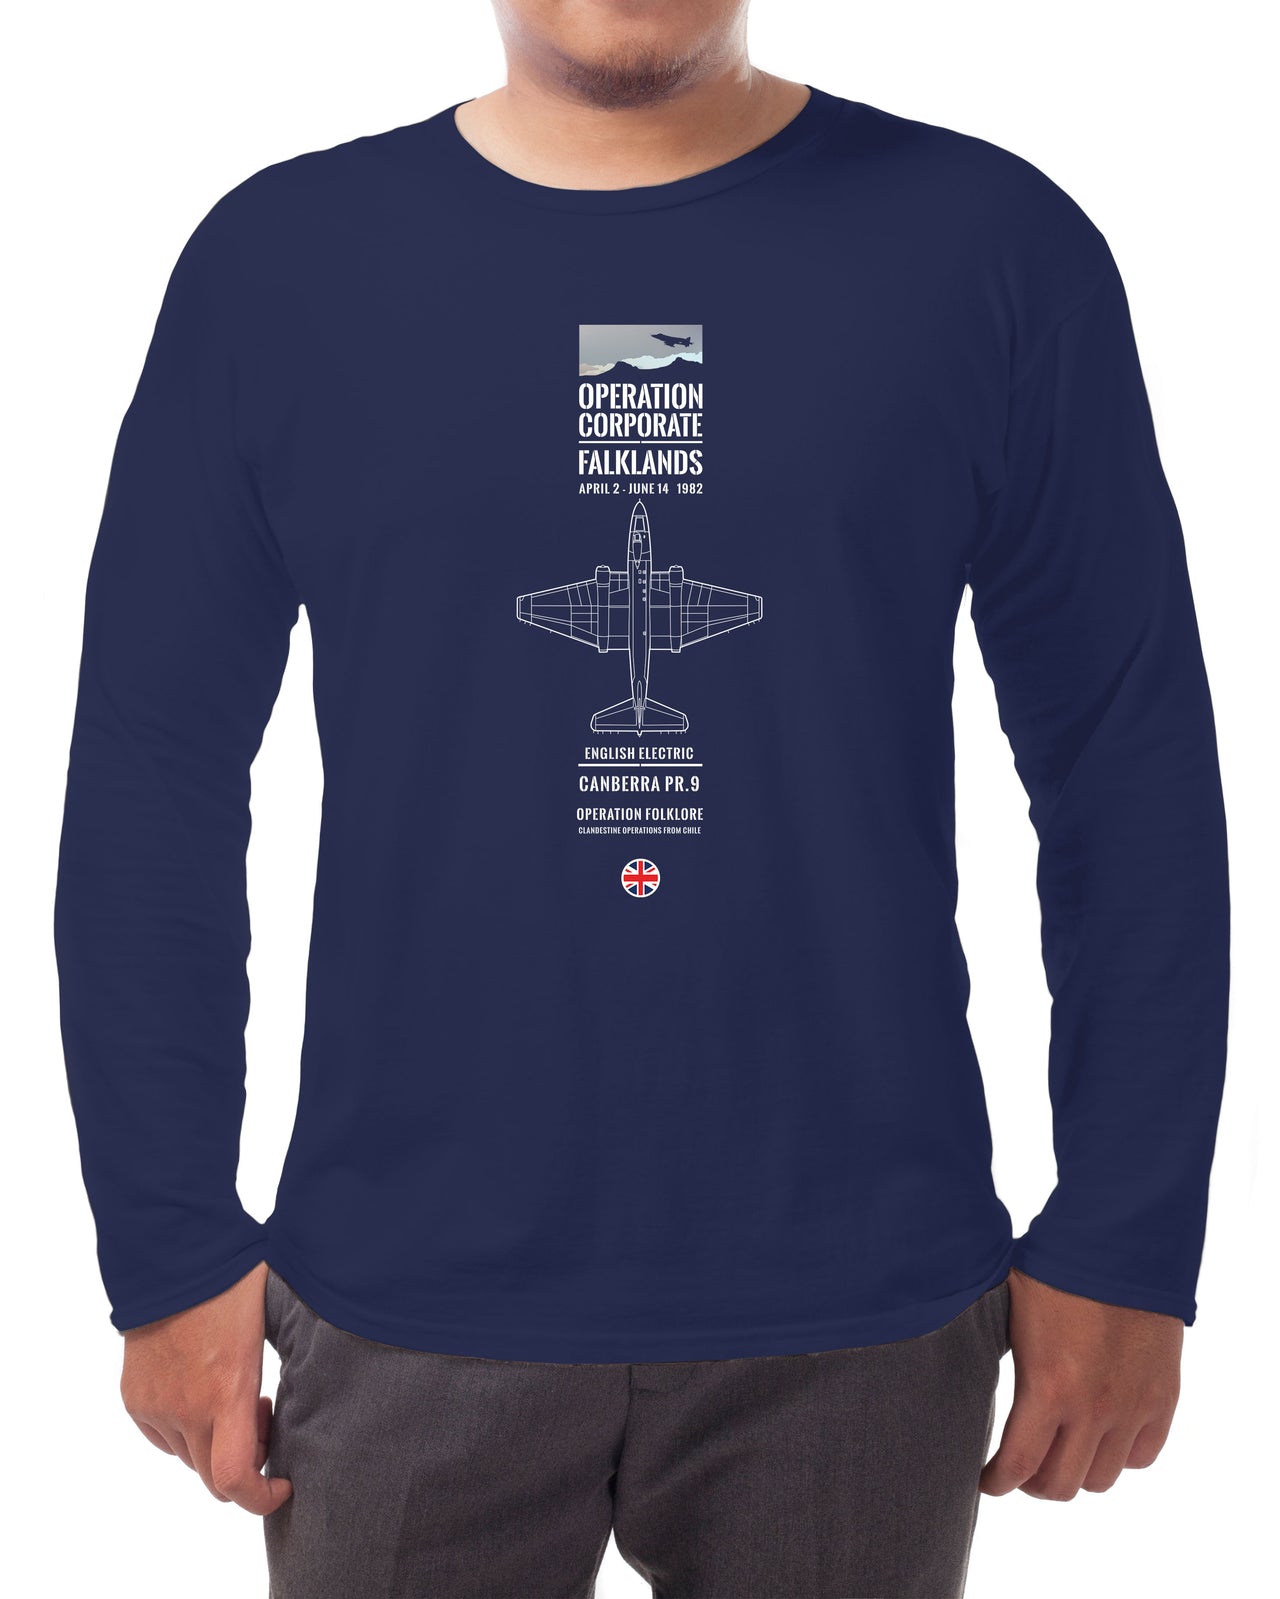 Canberra PR9 - Long-sleeve T-shirt